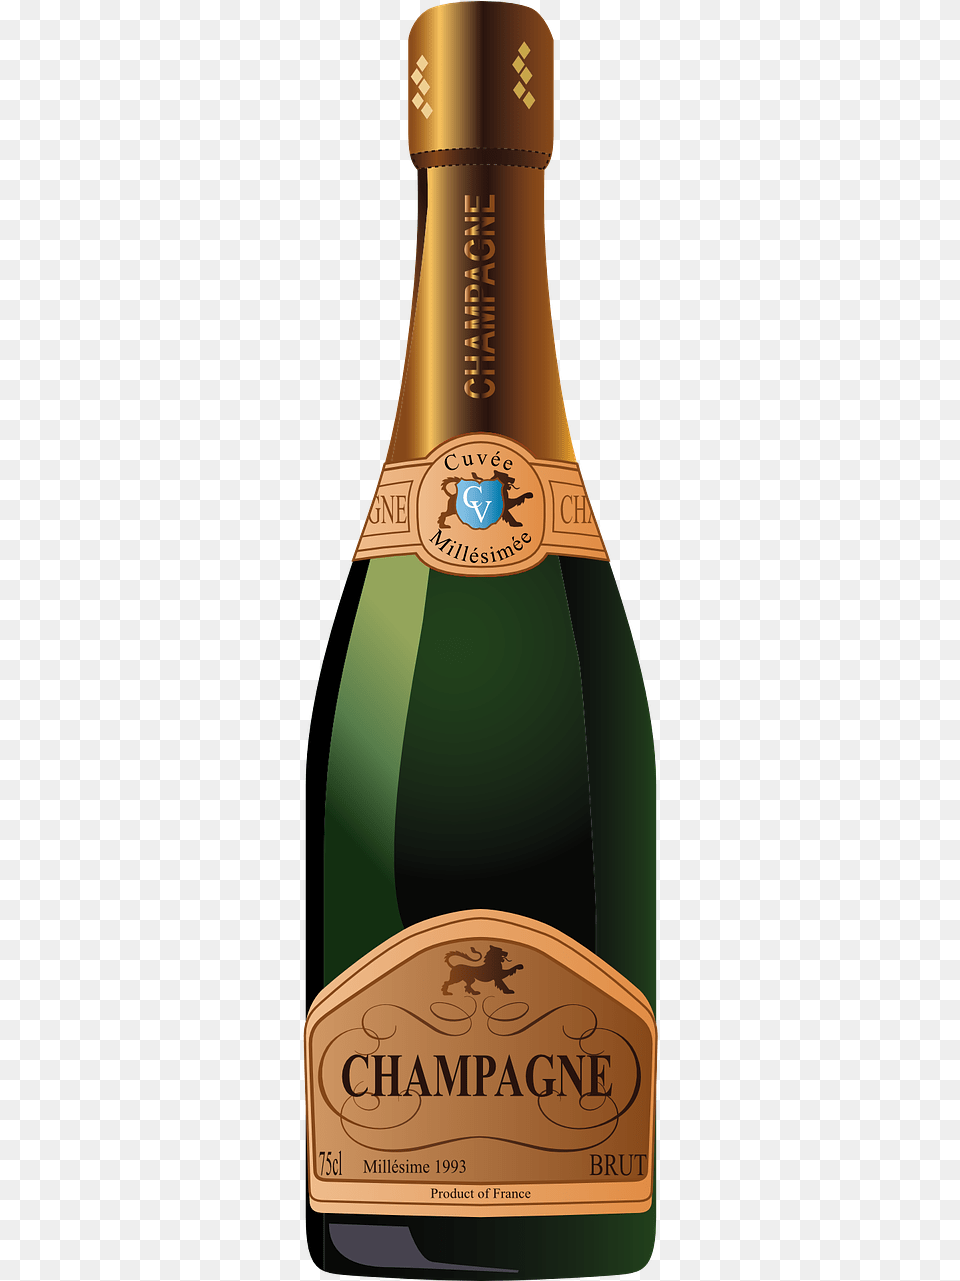 Champagne Bottle Mockup Psd Alcohol, Beer, Beverage, Liquor Free Png Download